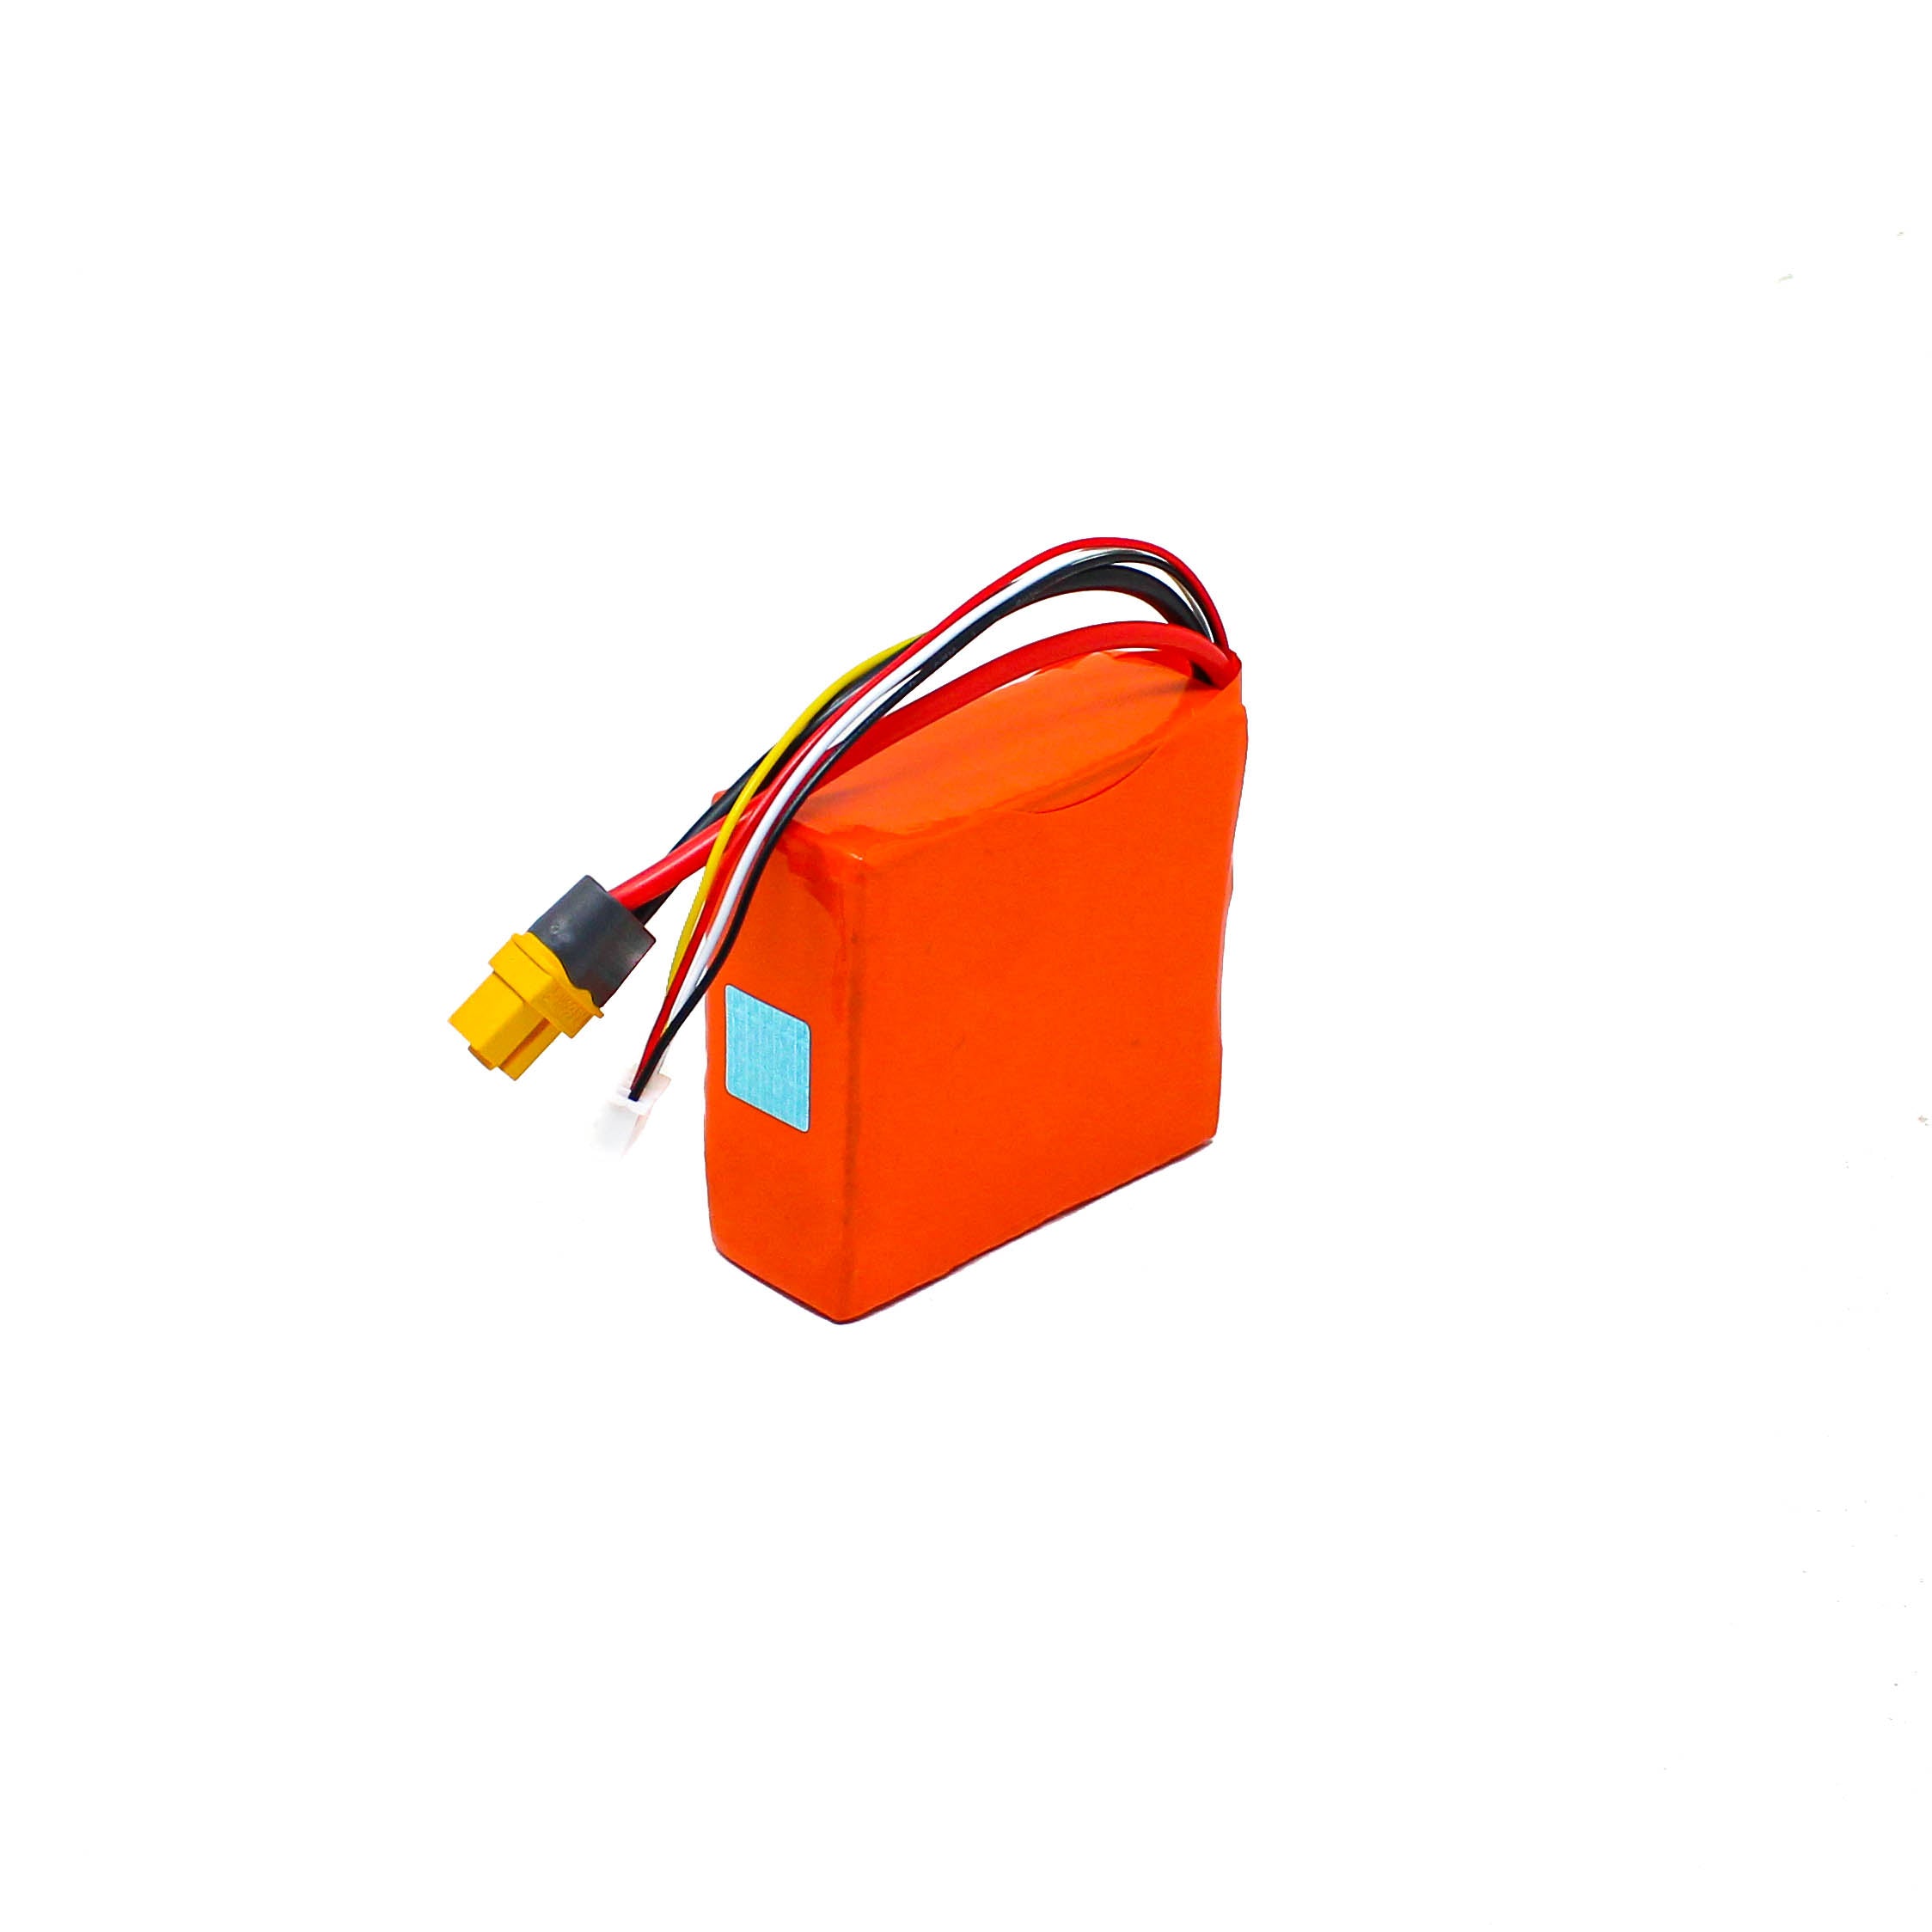 Orange ISR 18650 Li-ion 1300mAh 11.1v 3s1p Protected Battery Pack-8C